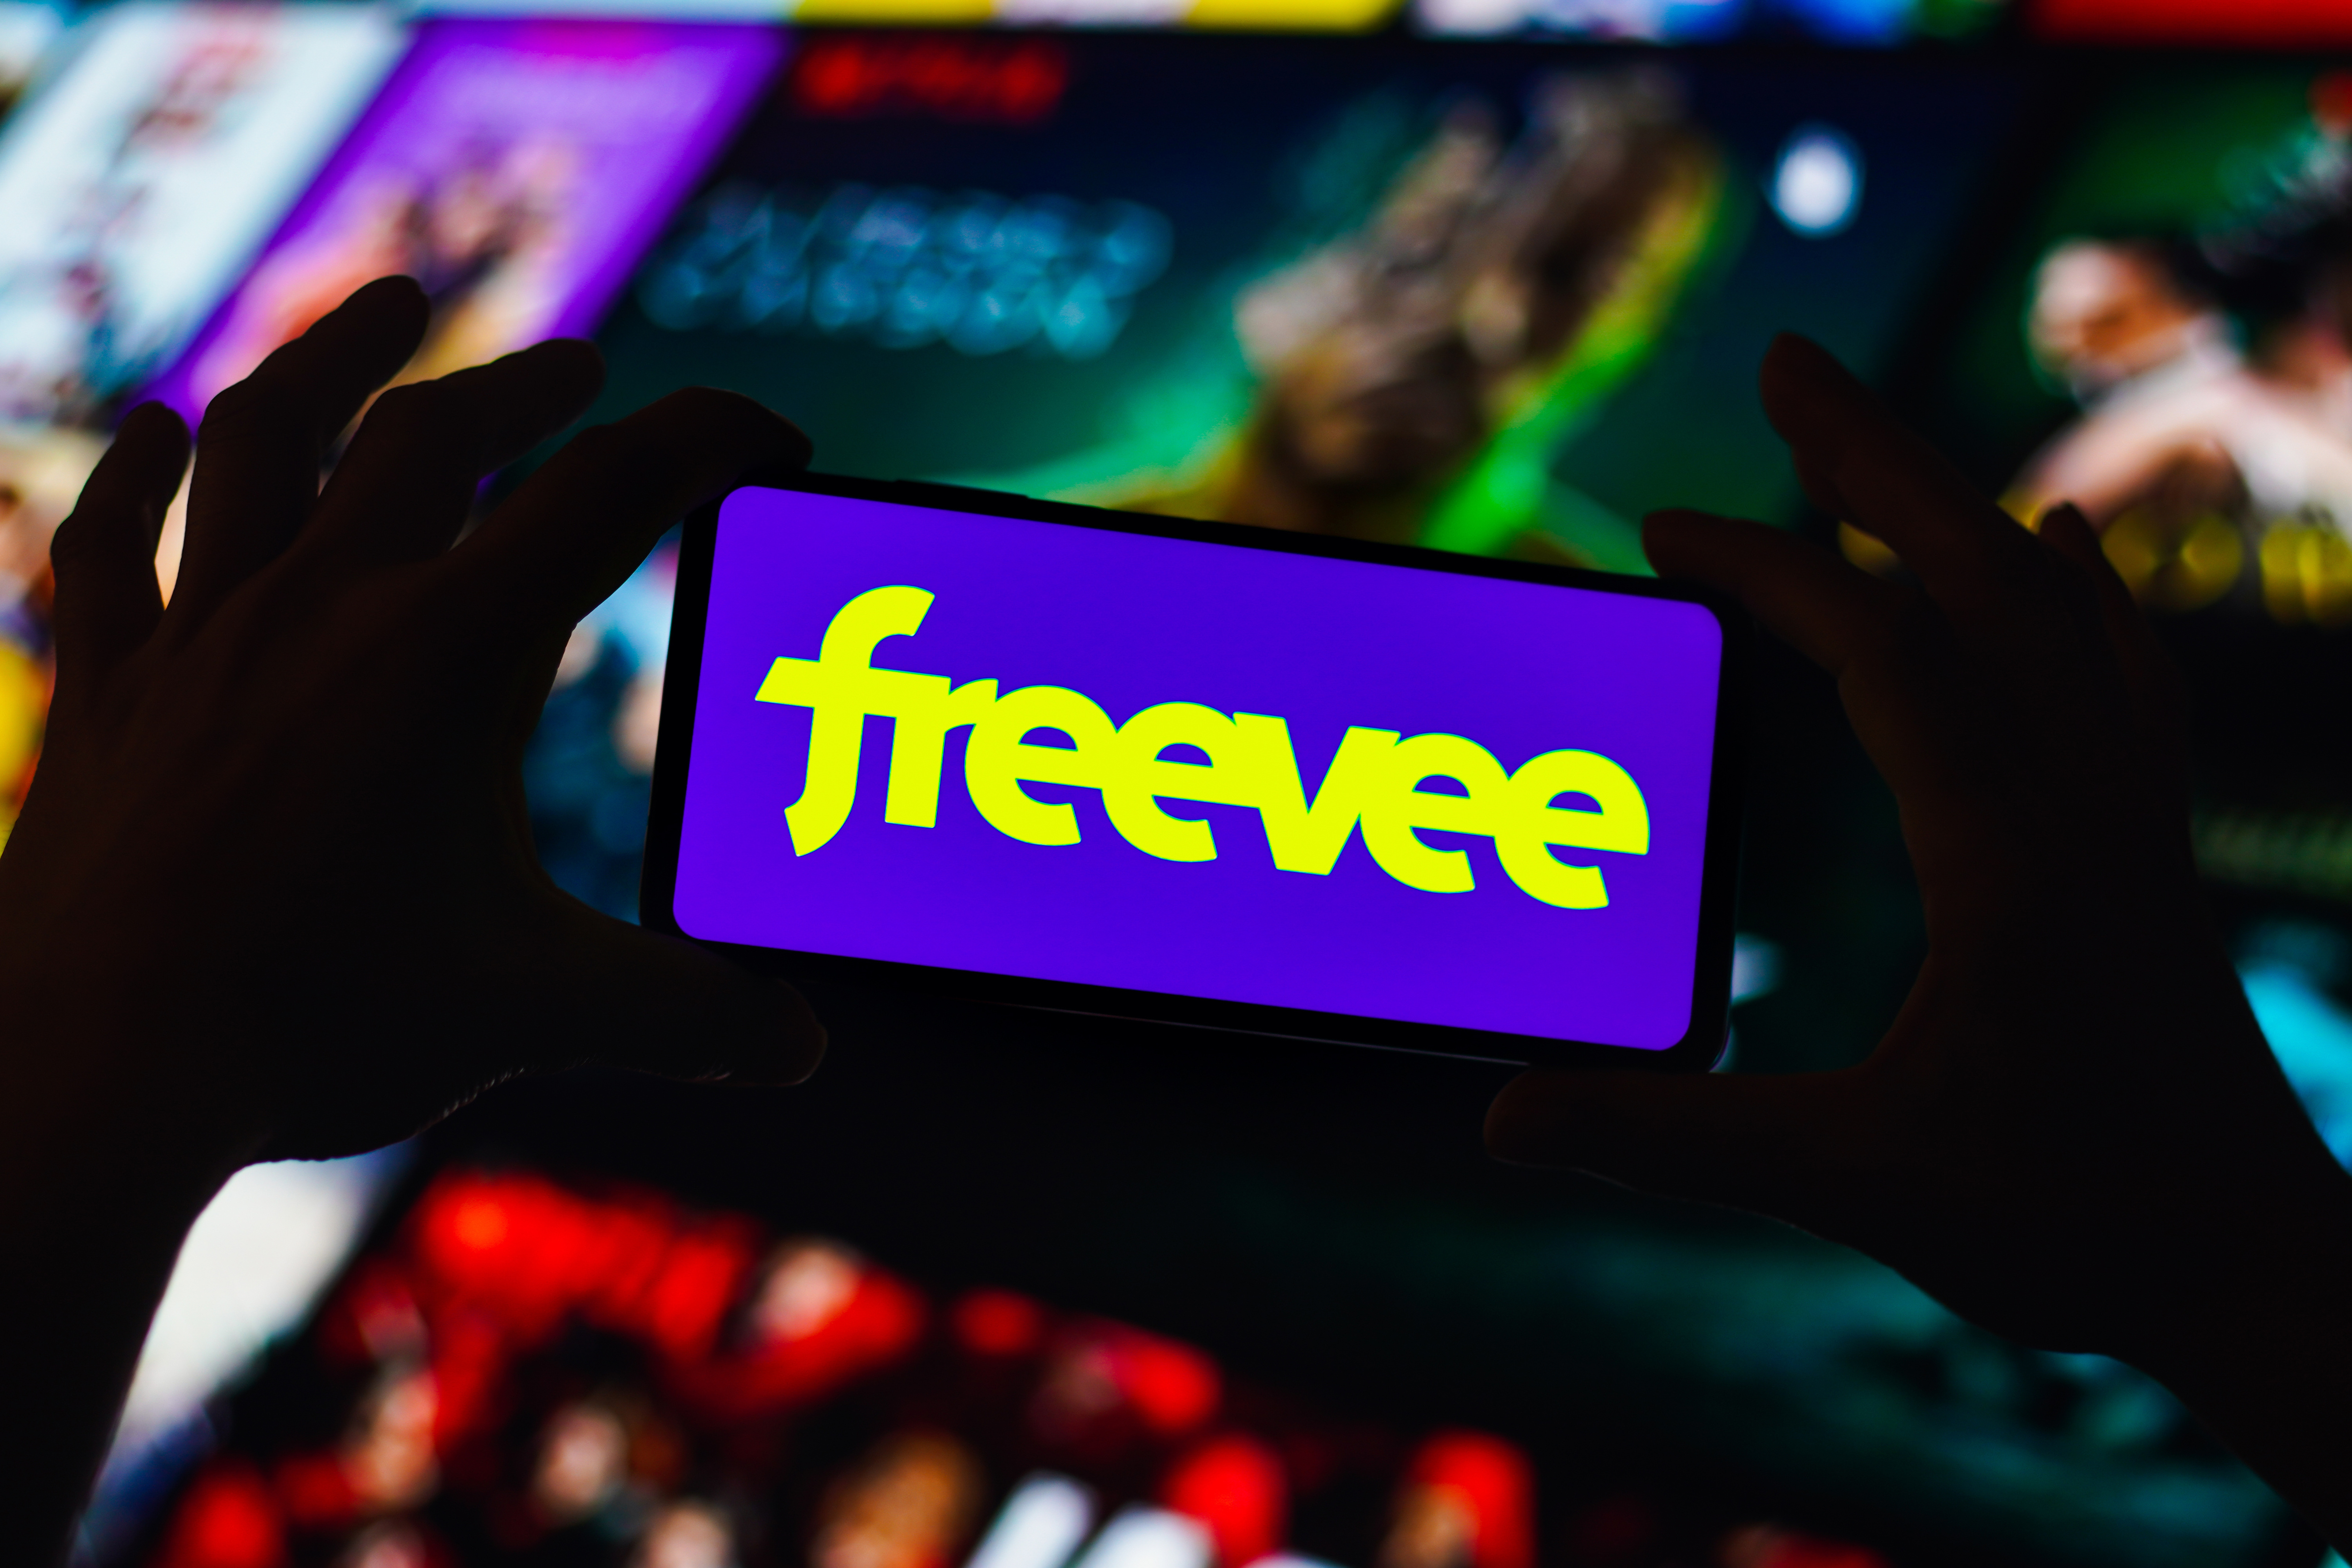 Freevee ofrece shows exclusivos como Judy Justice gratis